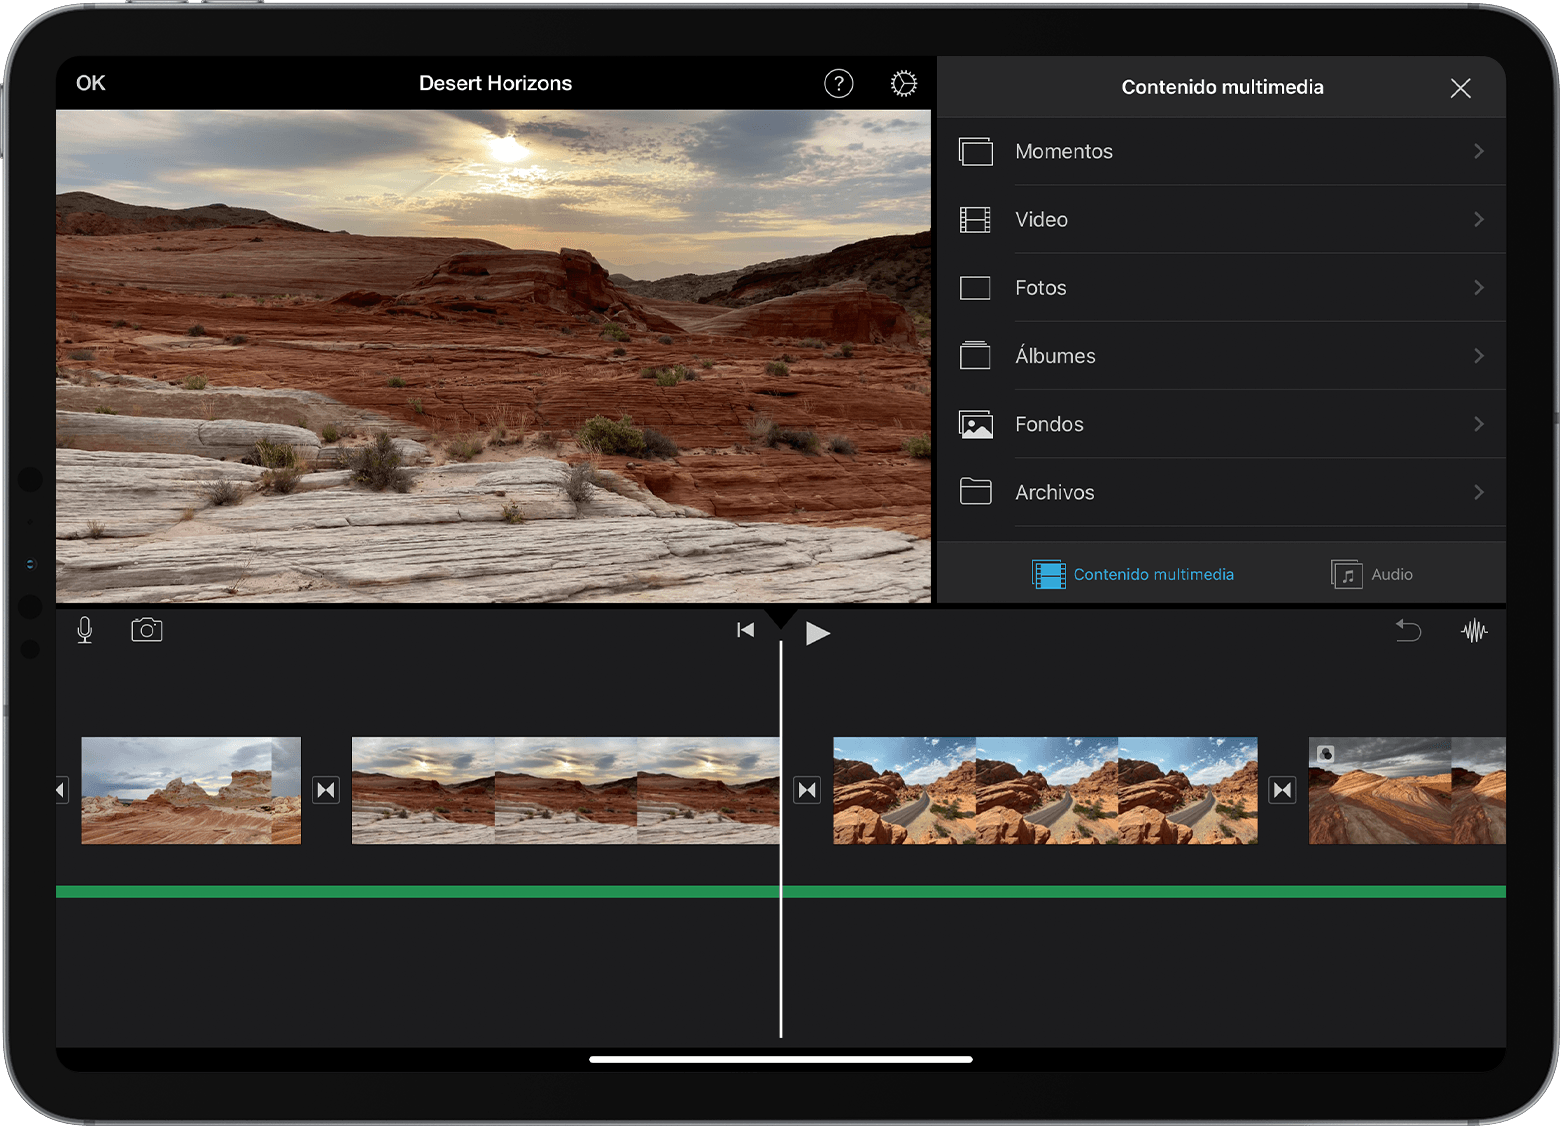 Proyecto de iMovie en iPad con el explorador de contenido multimedia abierto